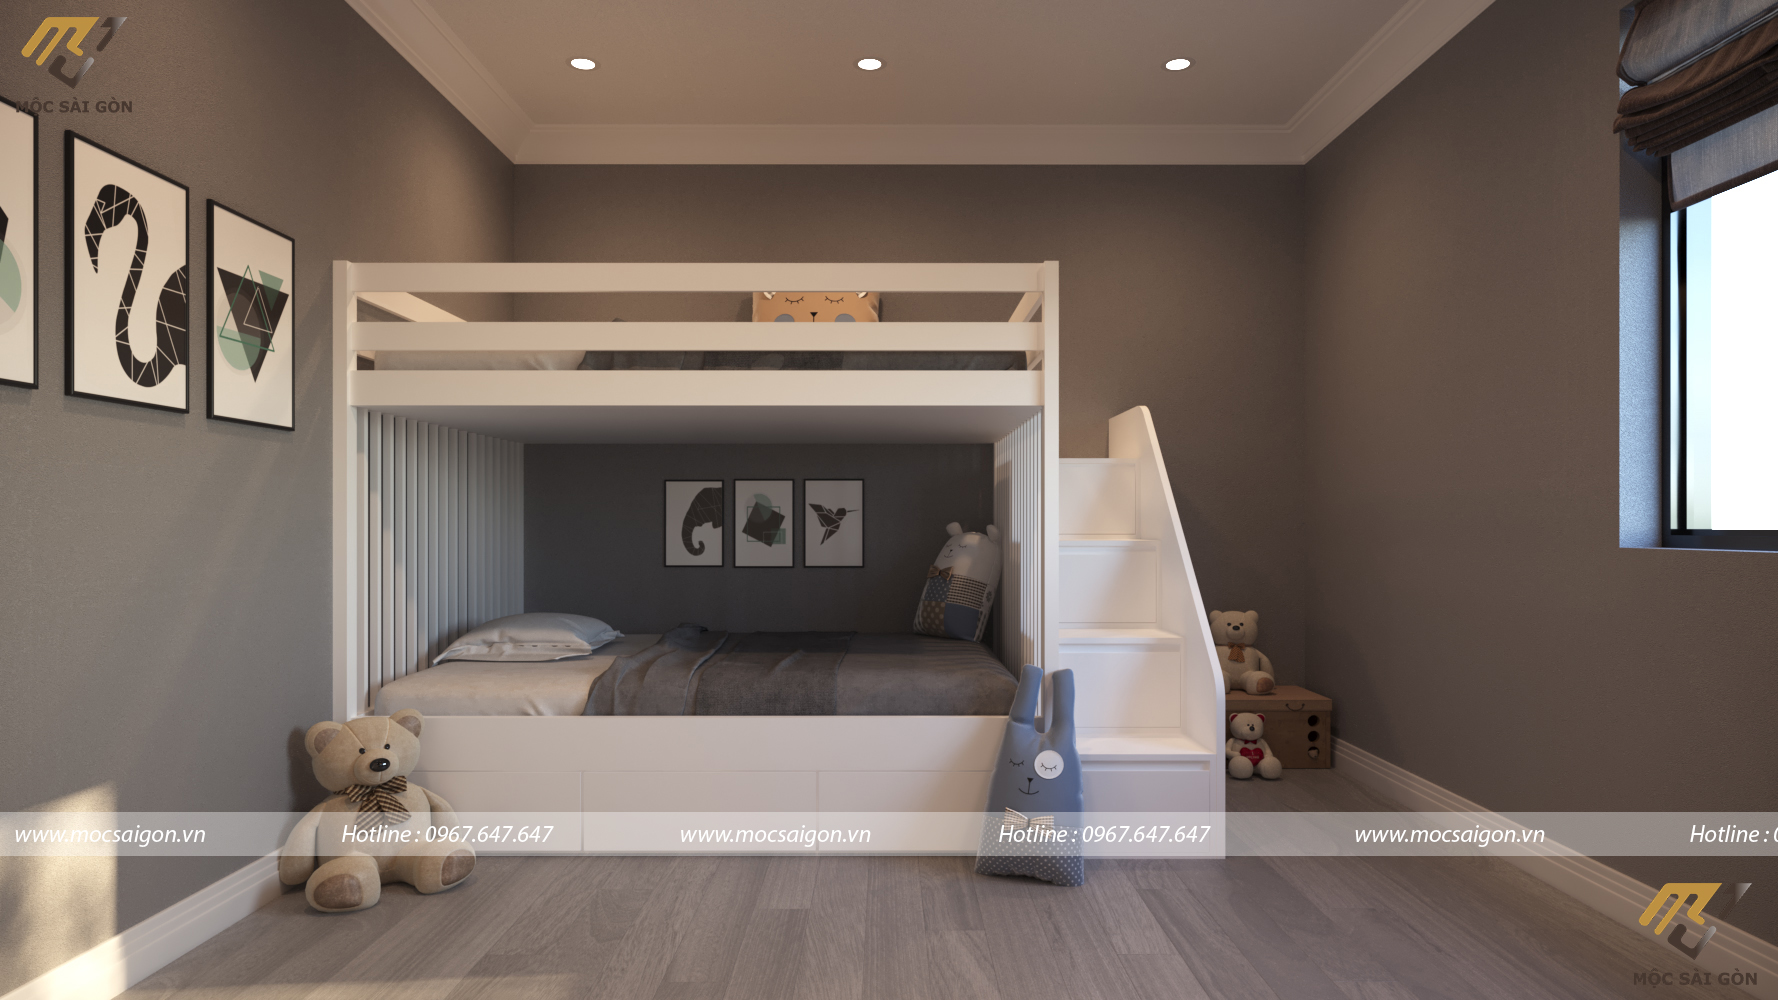 Thiết kế nội thất chung cư - phong ngủ con gái